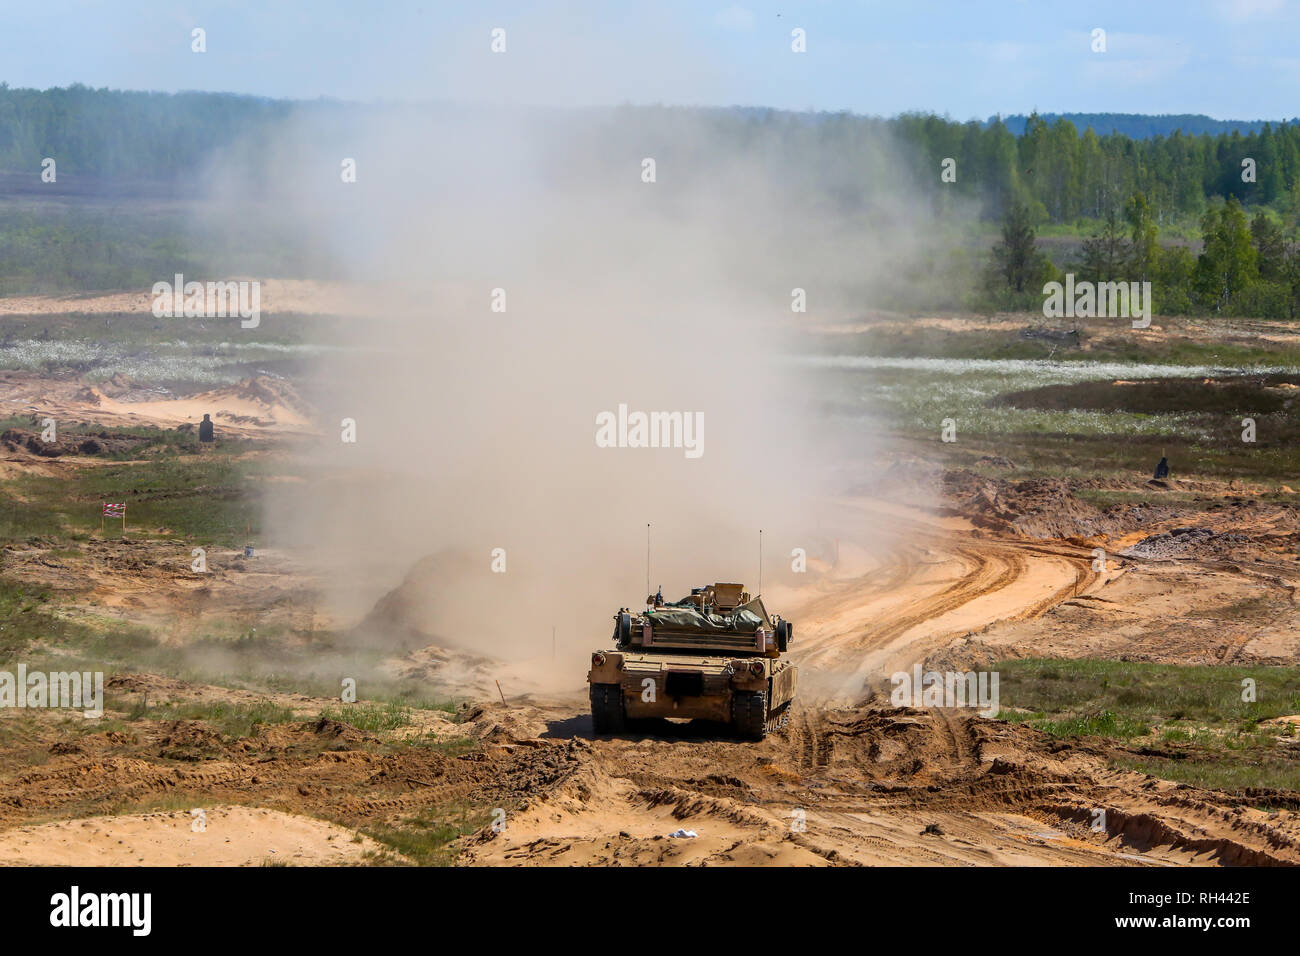 Esplosione e fumo. Militare Internazionale di Formazione "aber Strike 2017', Adazi, Lettonia, dal 3 al 15 giugno 2017. US Army Europe-led Internation annuale Foto Stock